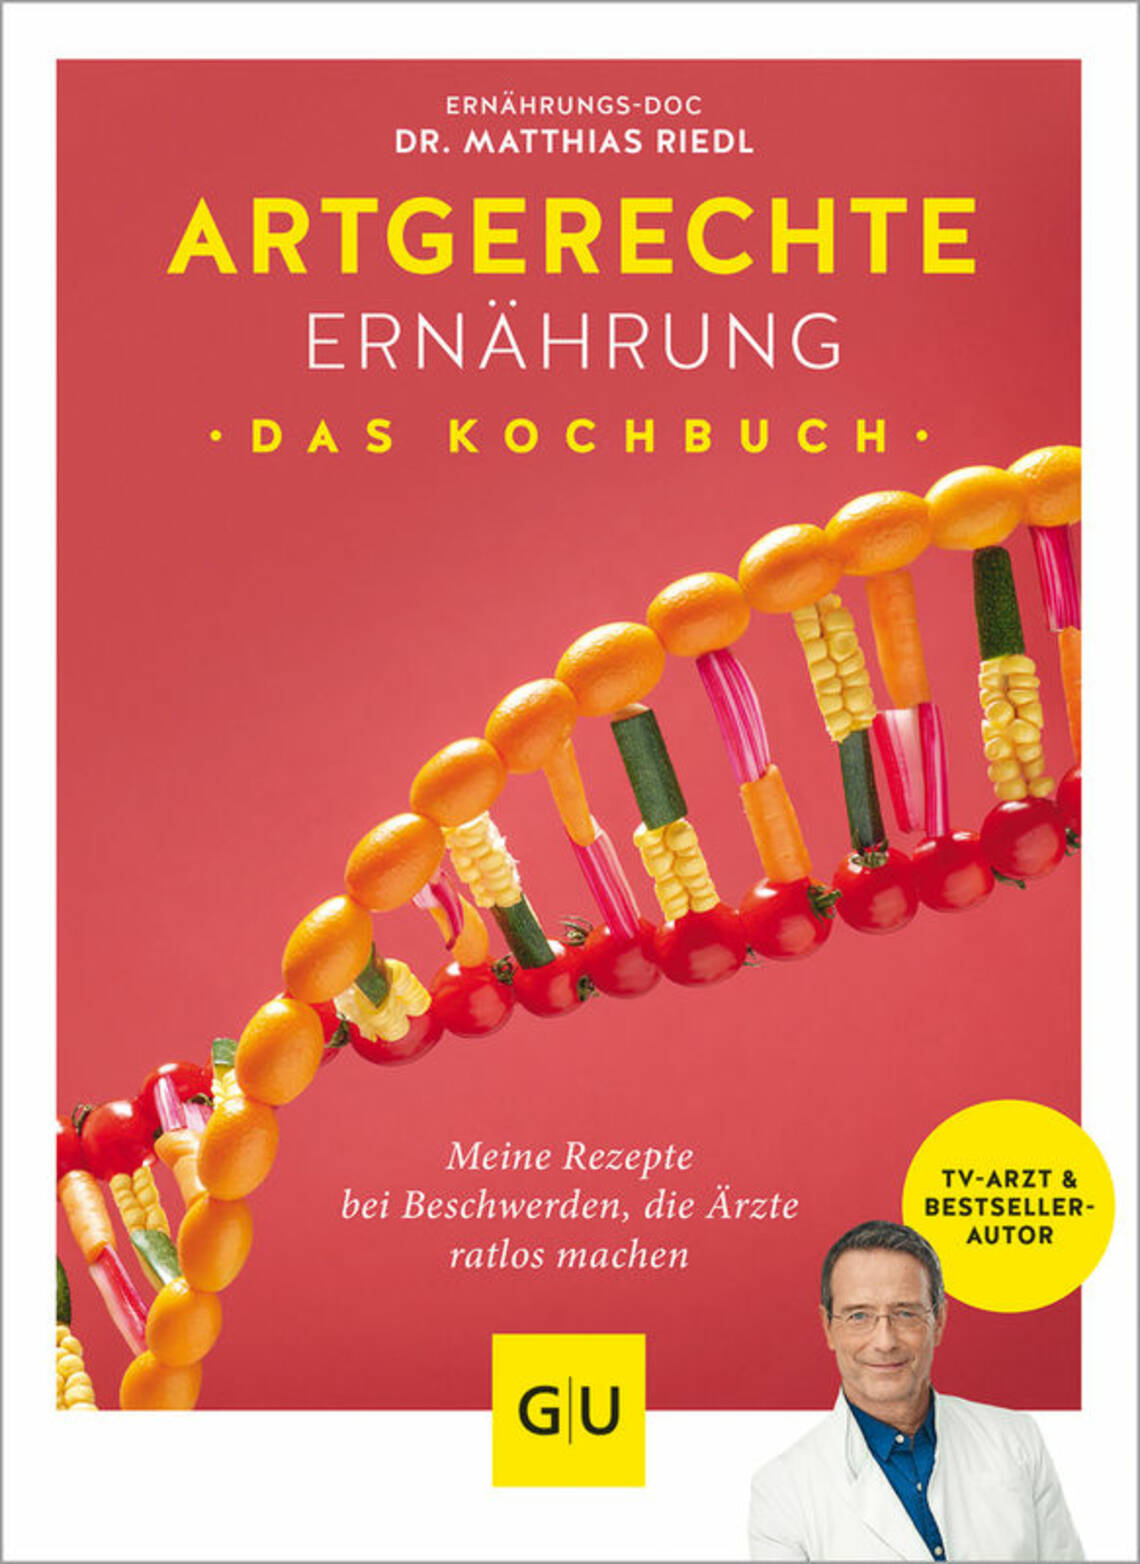 Artgerechte Ernährung – Das Kochbuch von Dr. Matthias Riedl